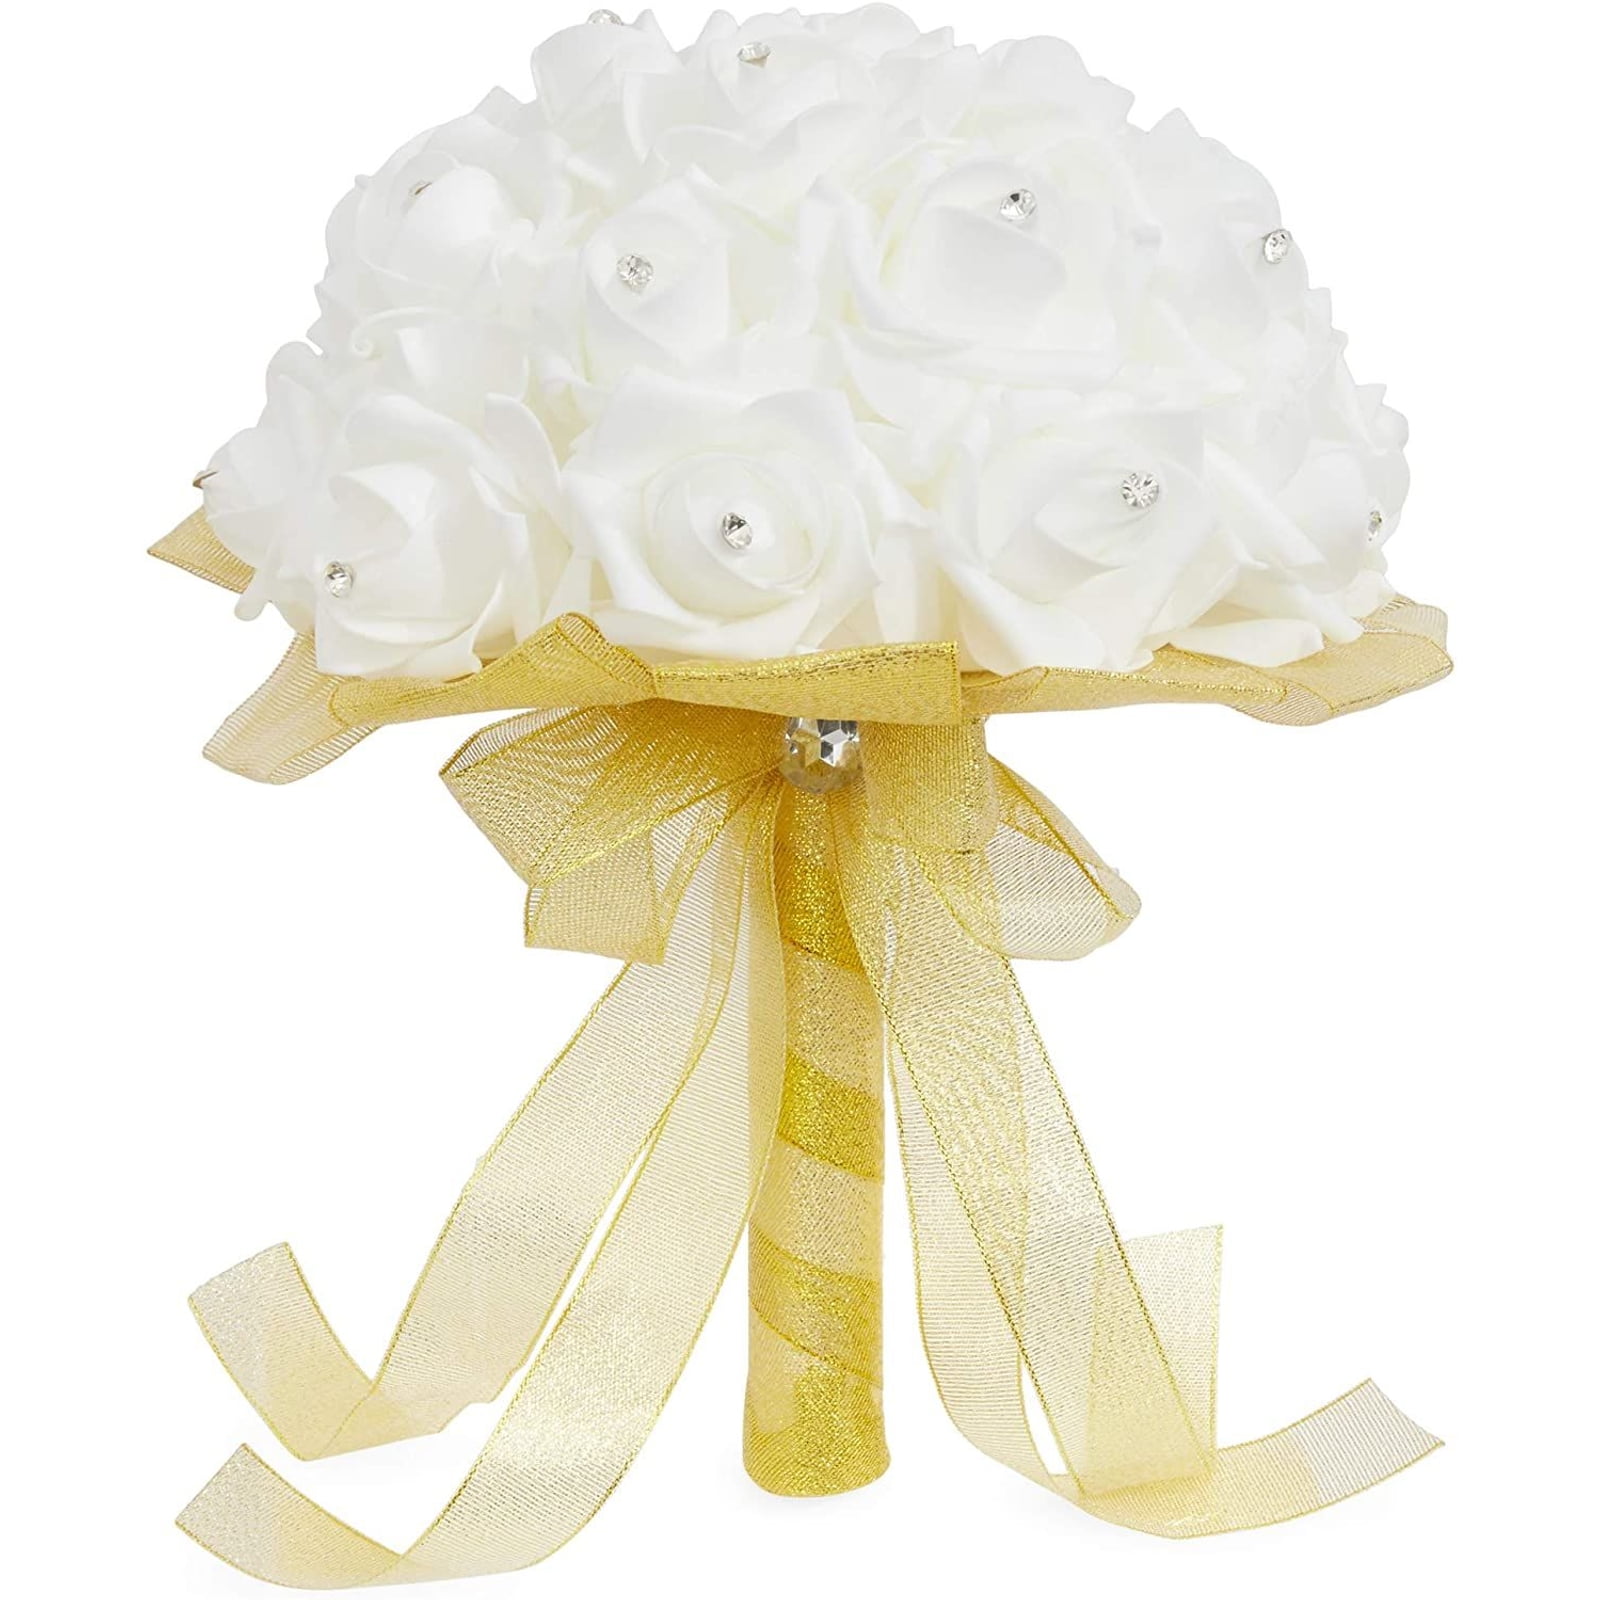 Details about   Foam Bouquet Handle Bridal Wedding Flower Holder Decoration With Lace Trim S`GA 